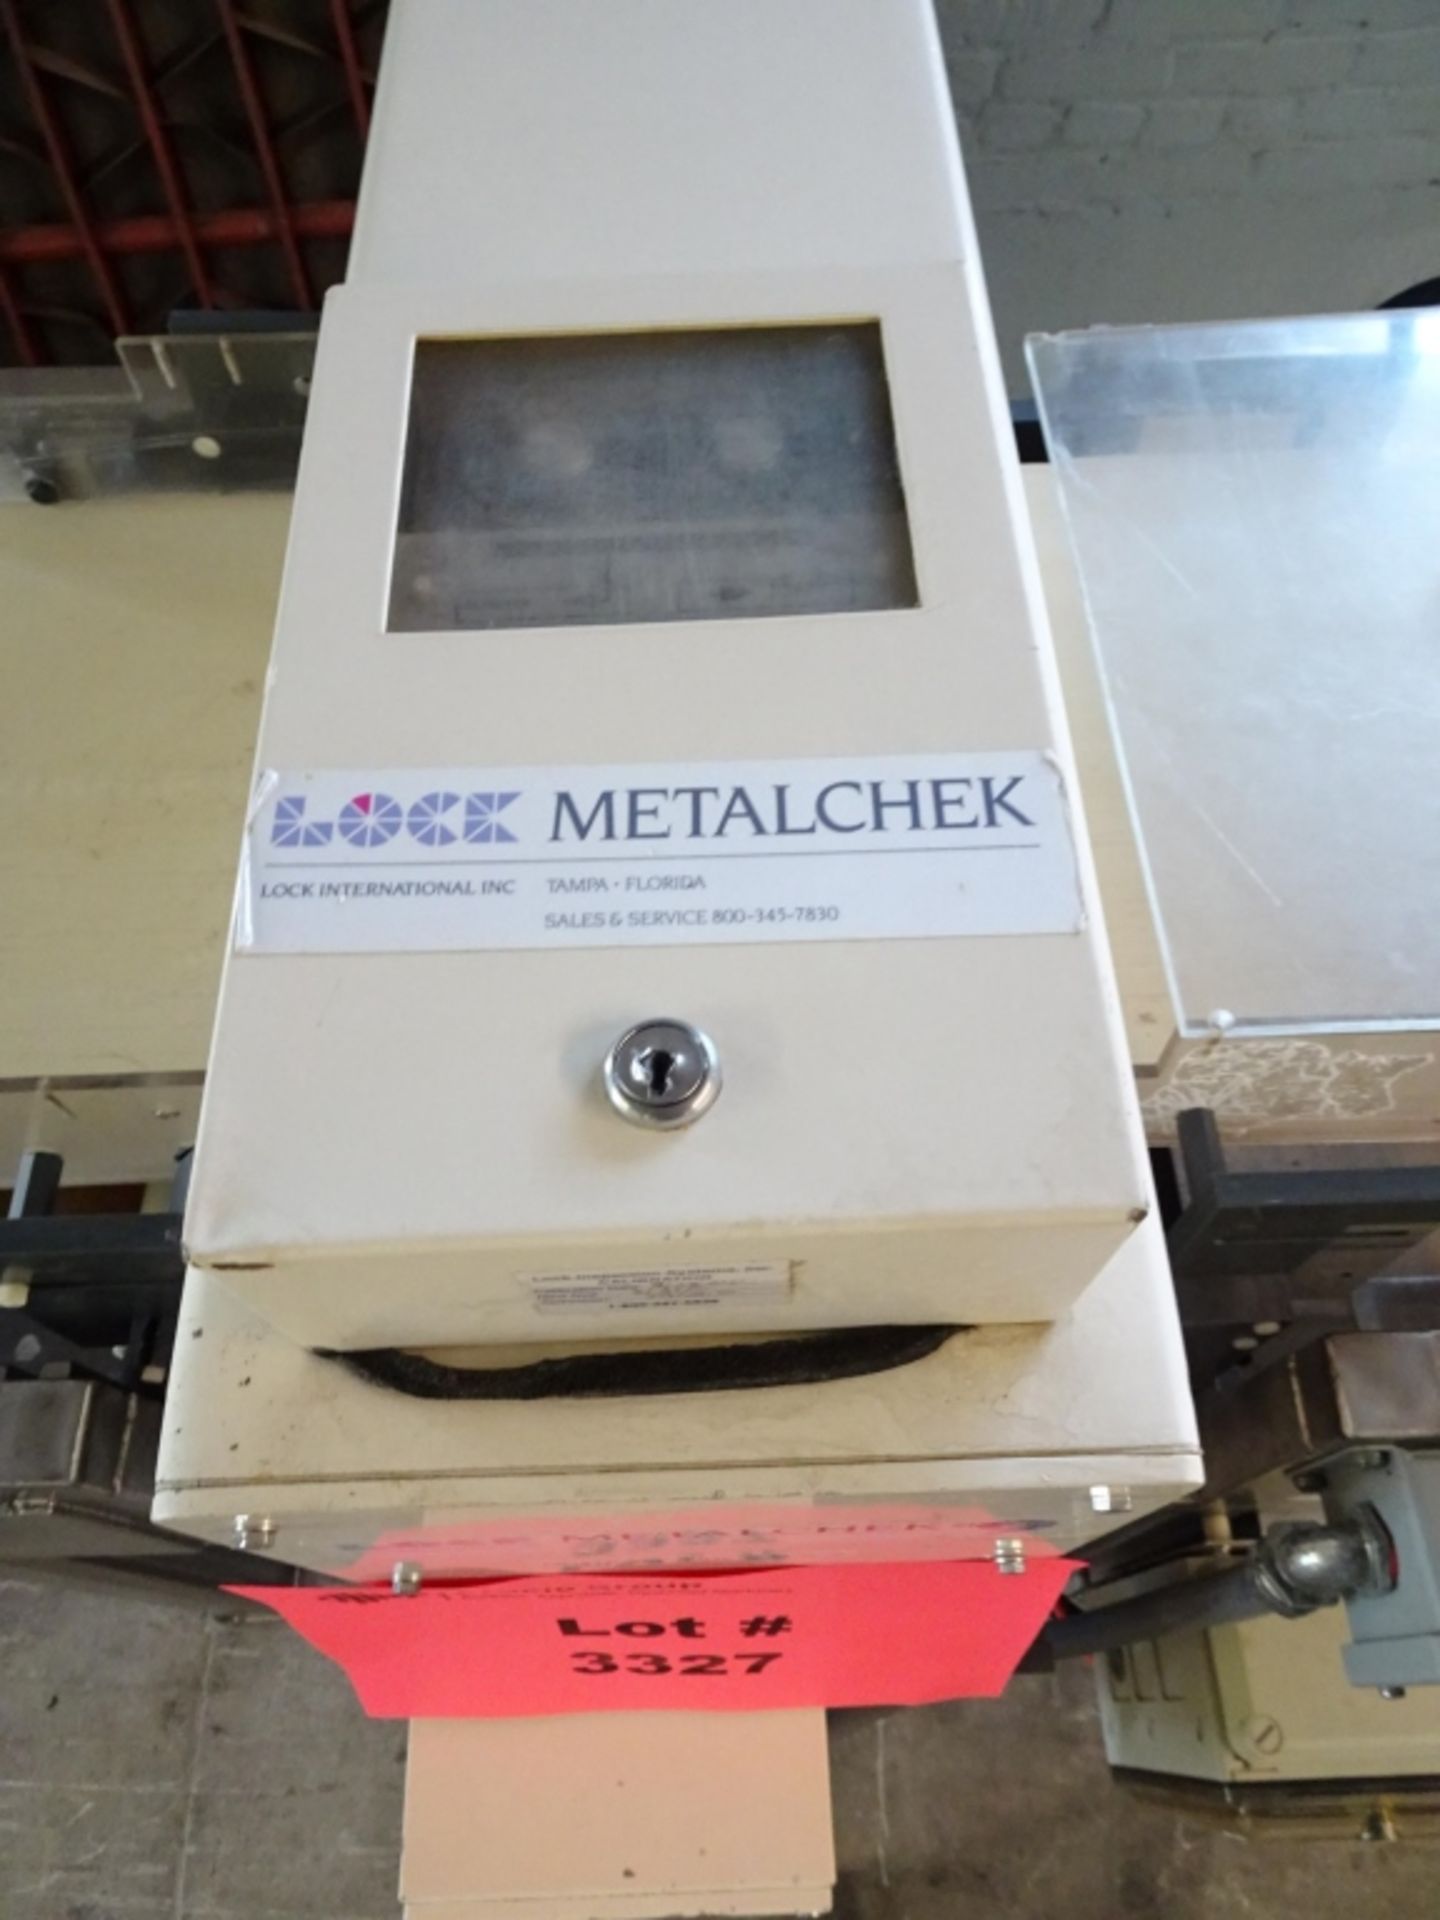 Lock Metalchek Inline Metal Detection Conveyor - Image 2 of 4